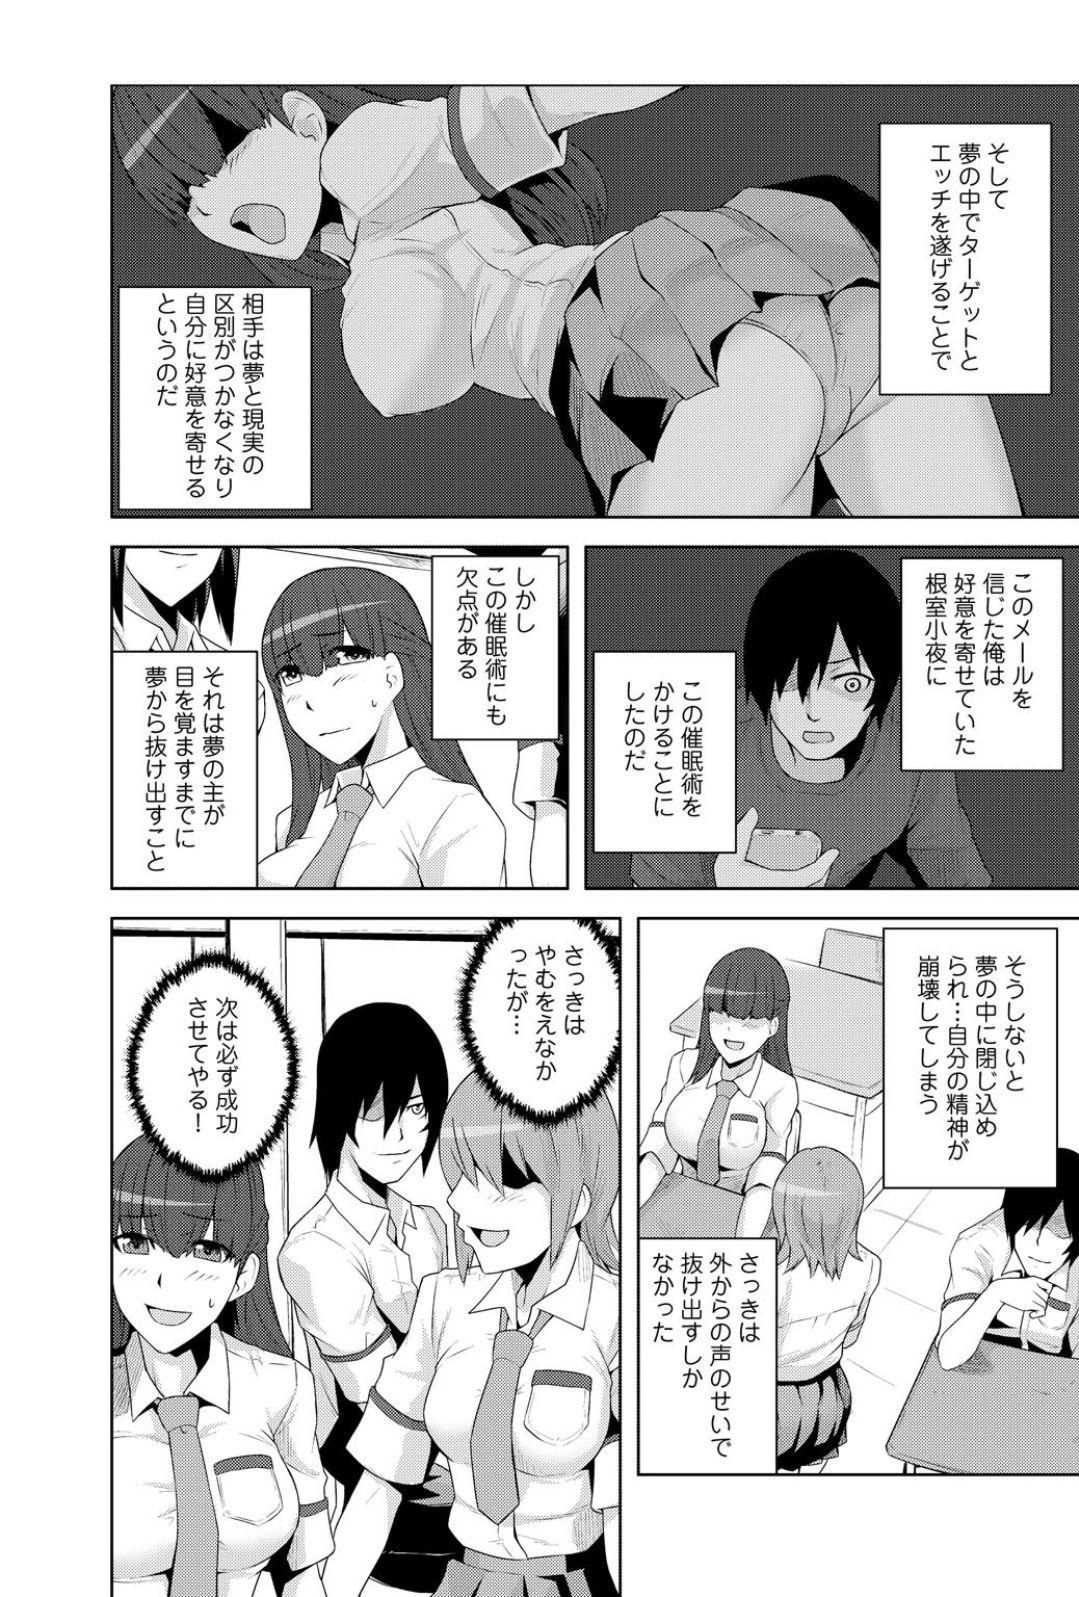 Hot Girls Getting Fucked Sennou, Inmu - Yume de Aitsu ga Nando mo Watashi o...! Outdoor Sex - Page 8